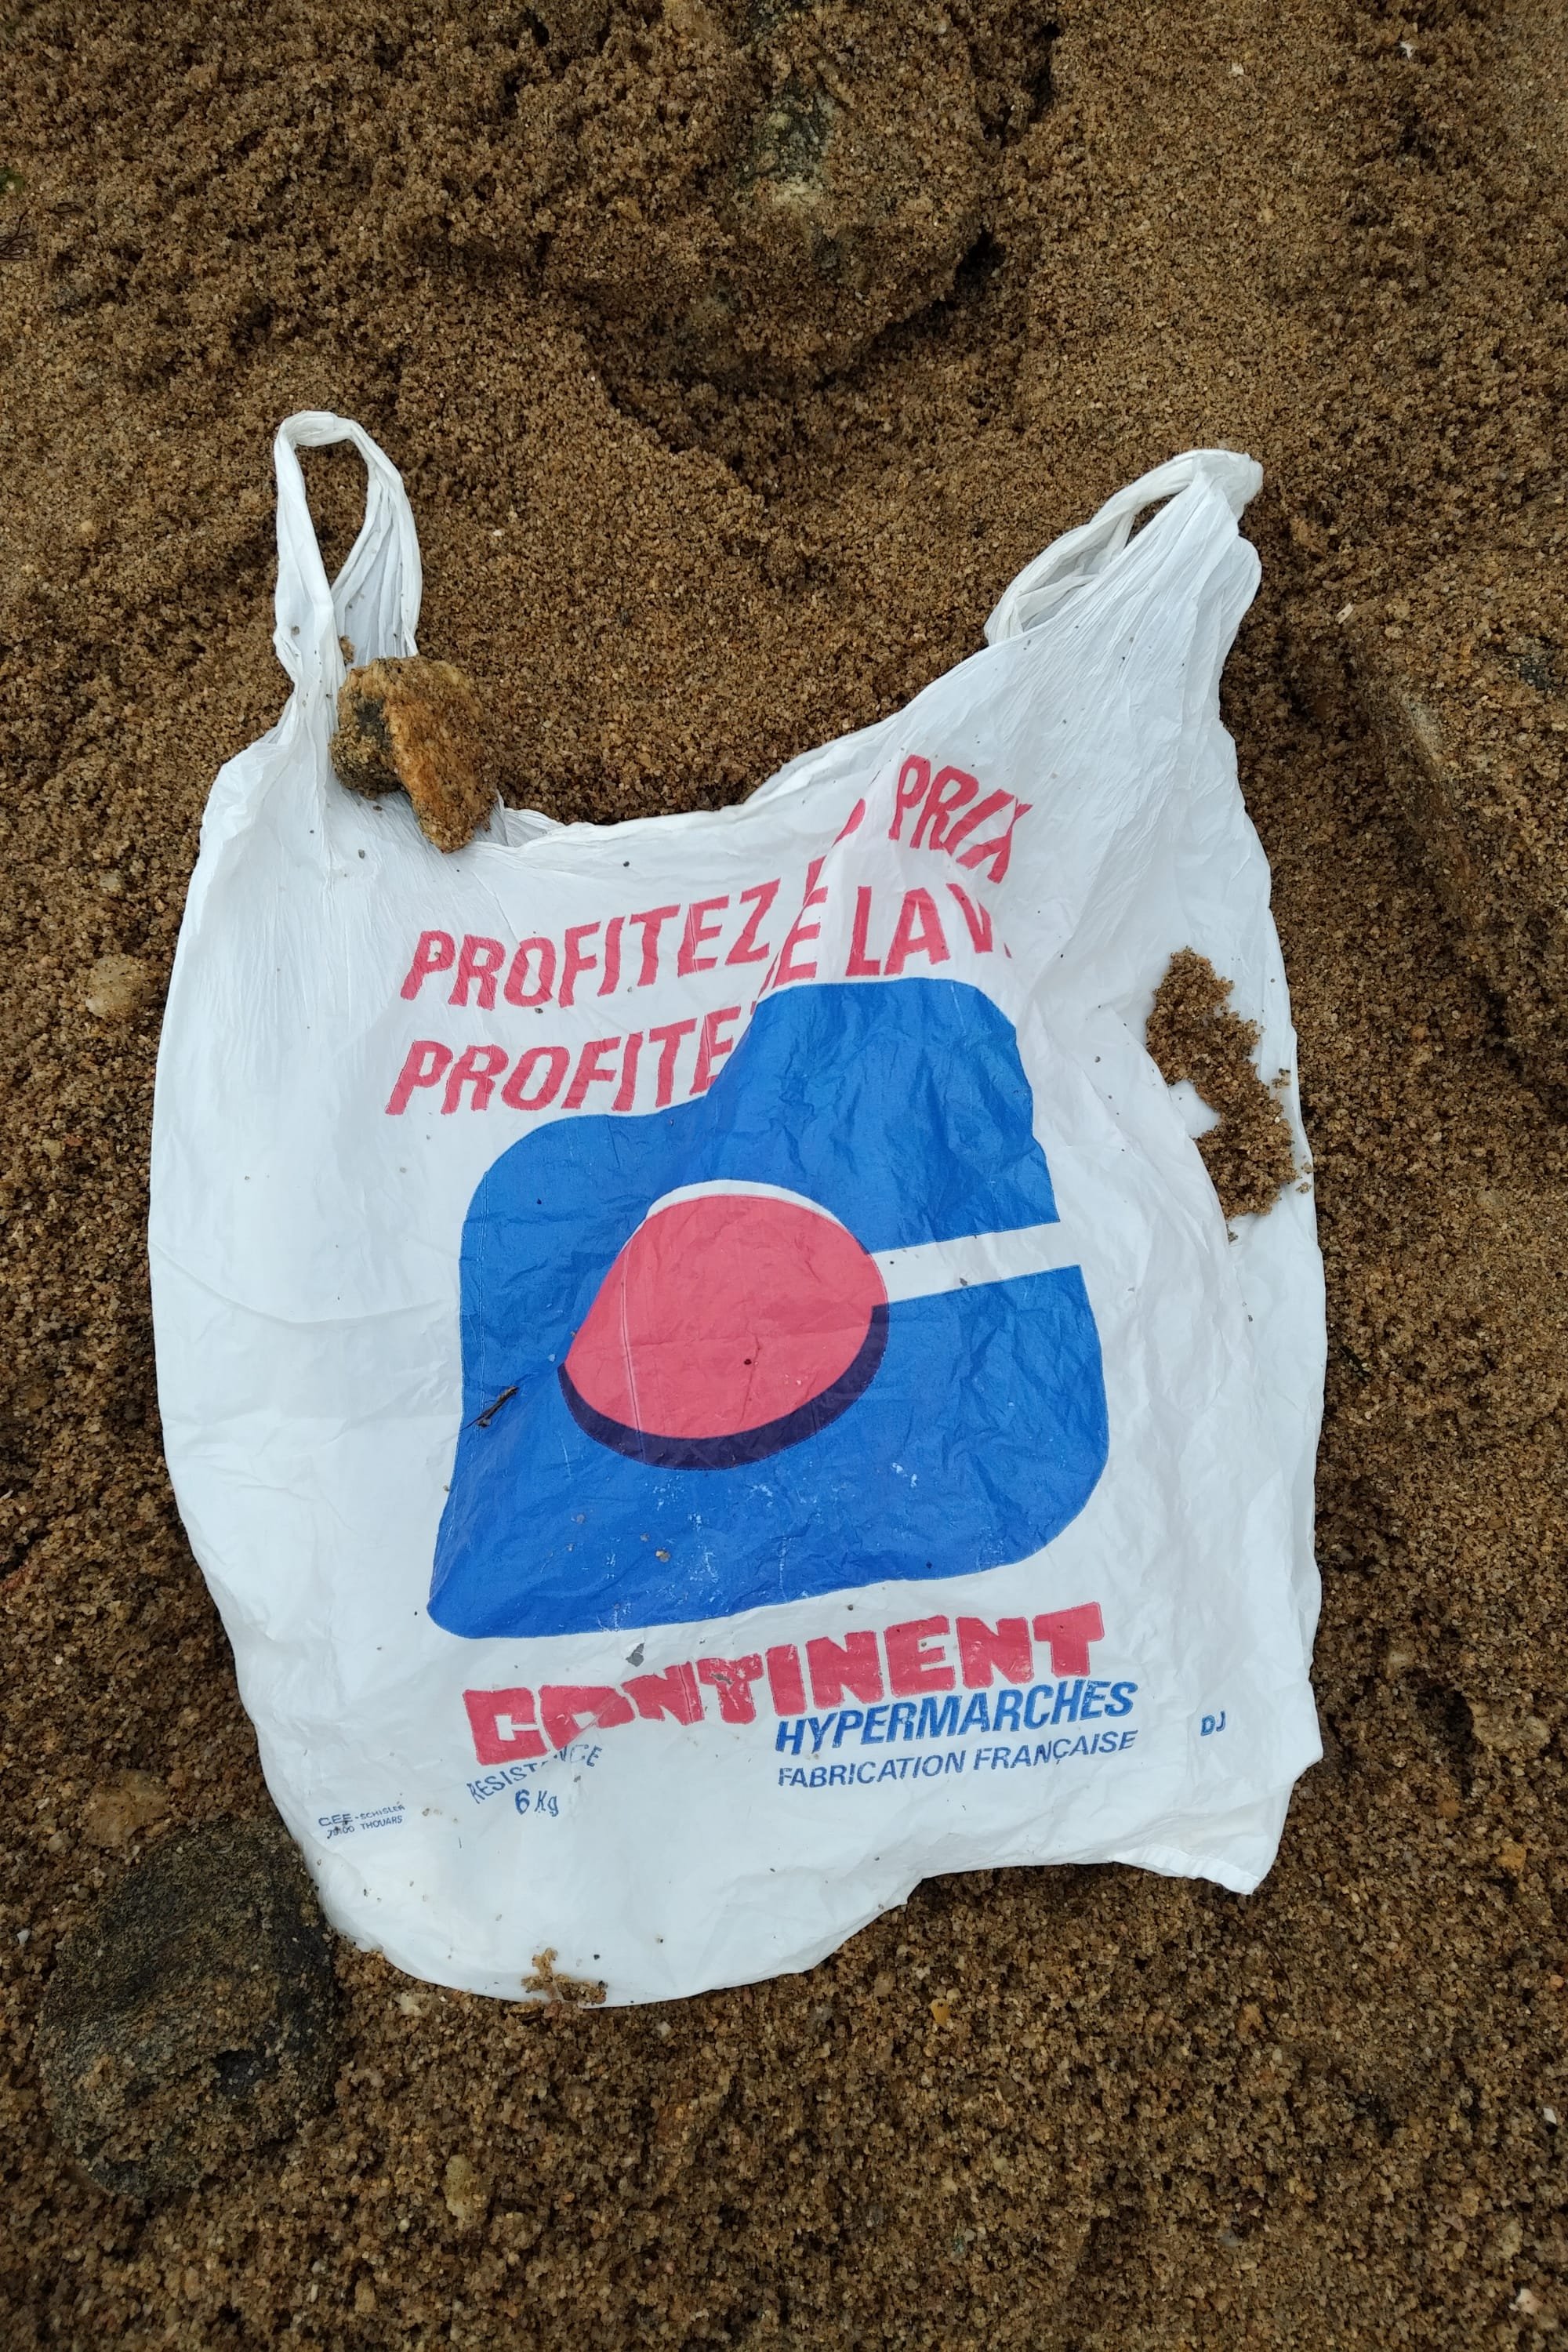 Sac plastique Continent sorti du sable à Vannes, 30 ans après